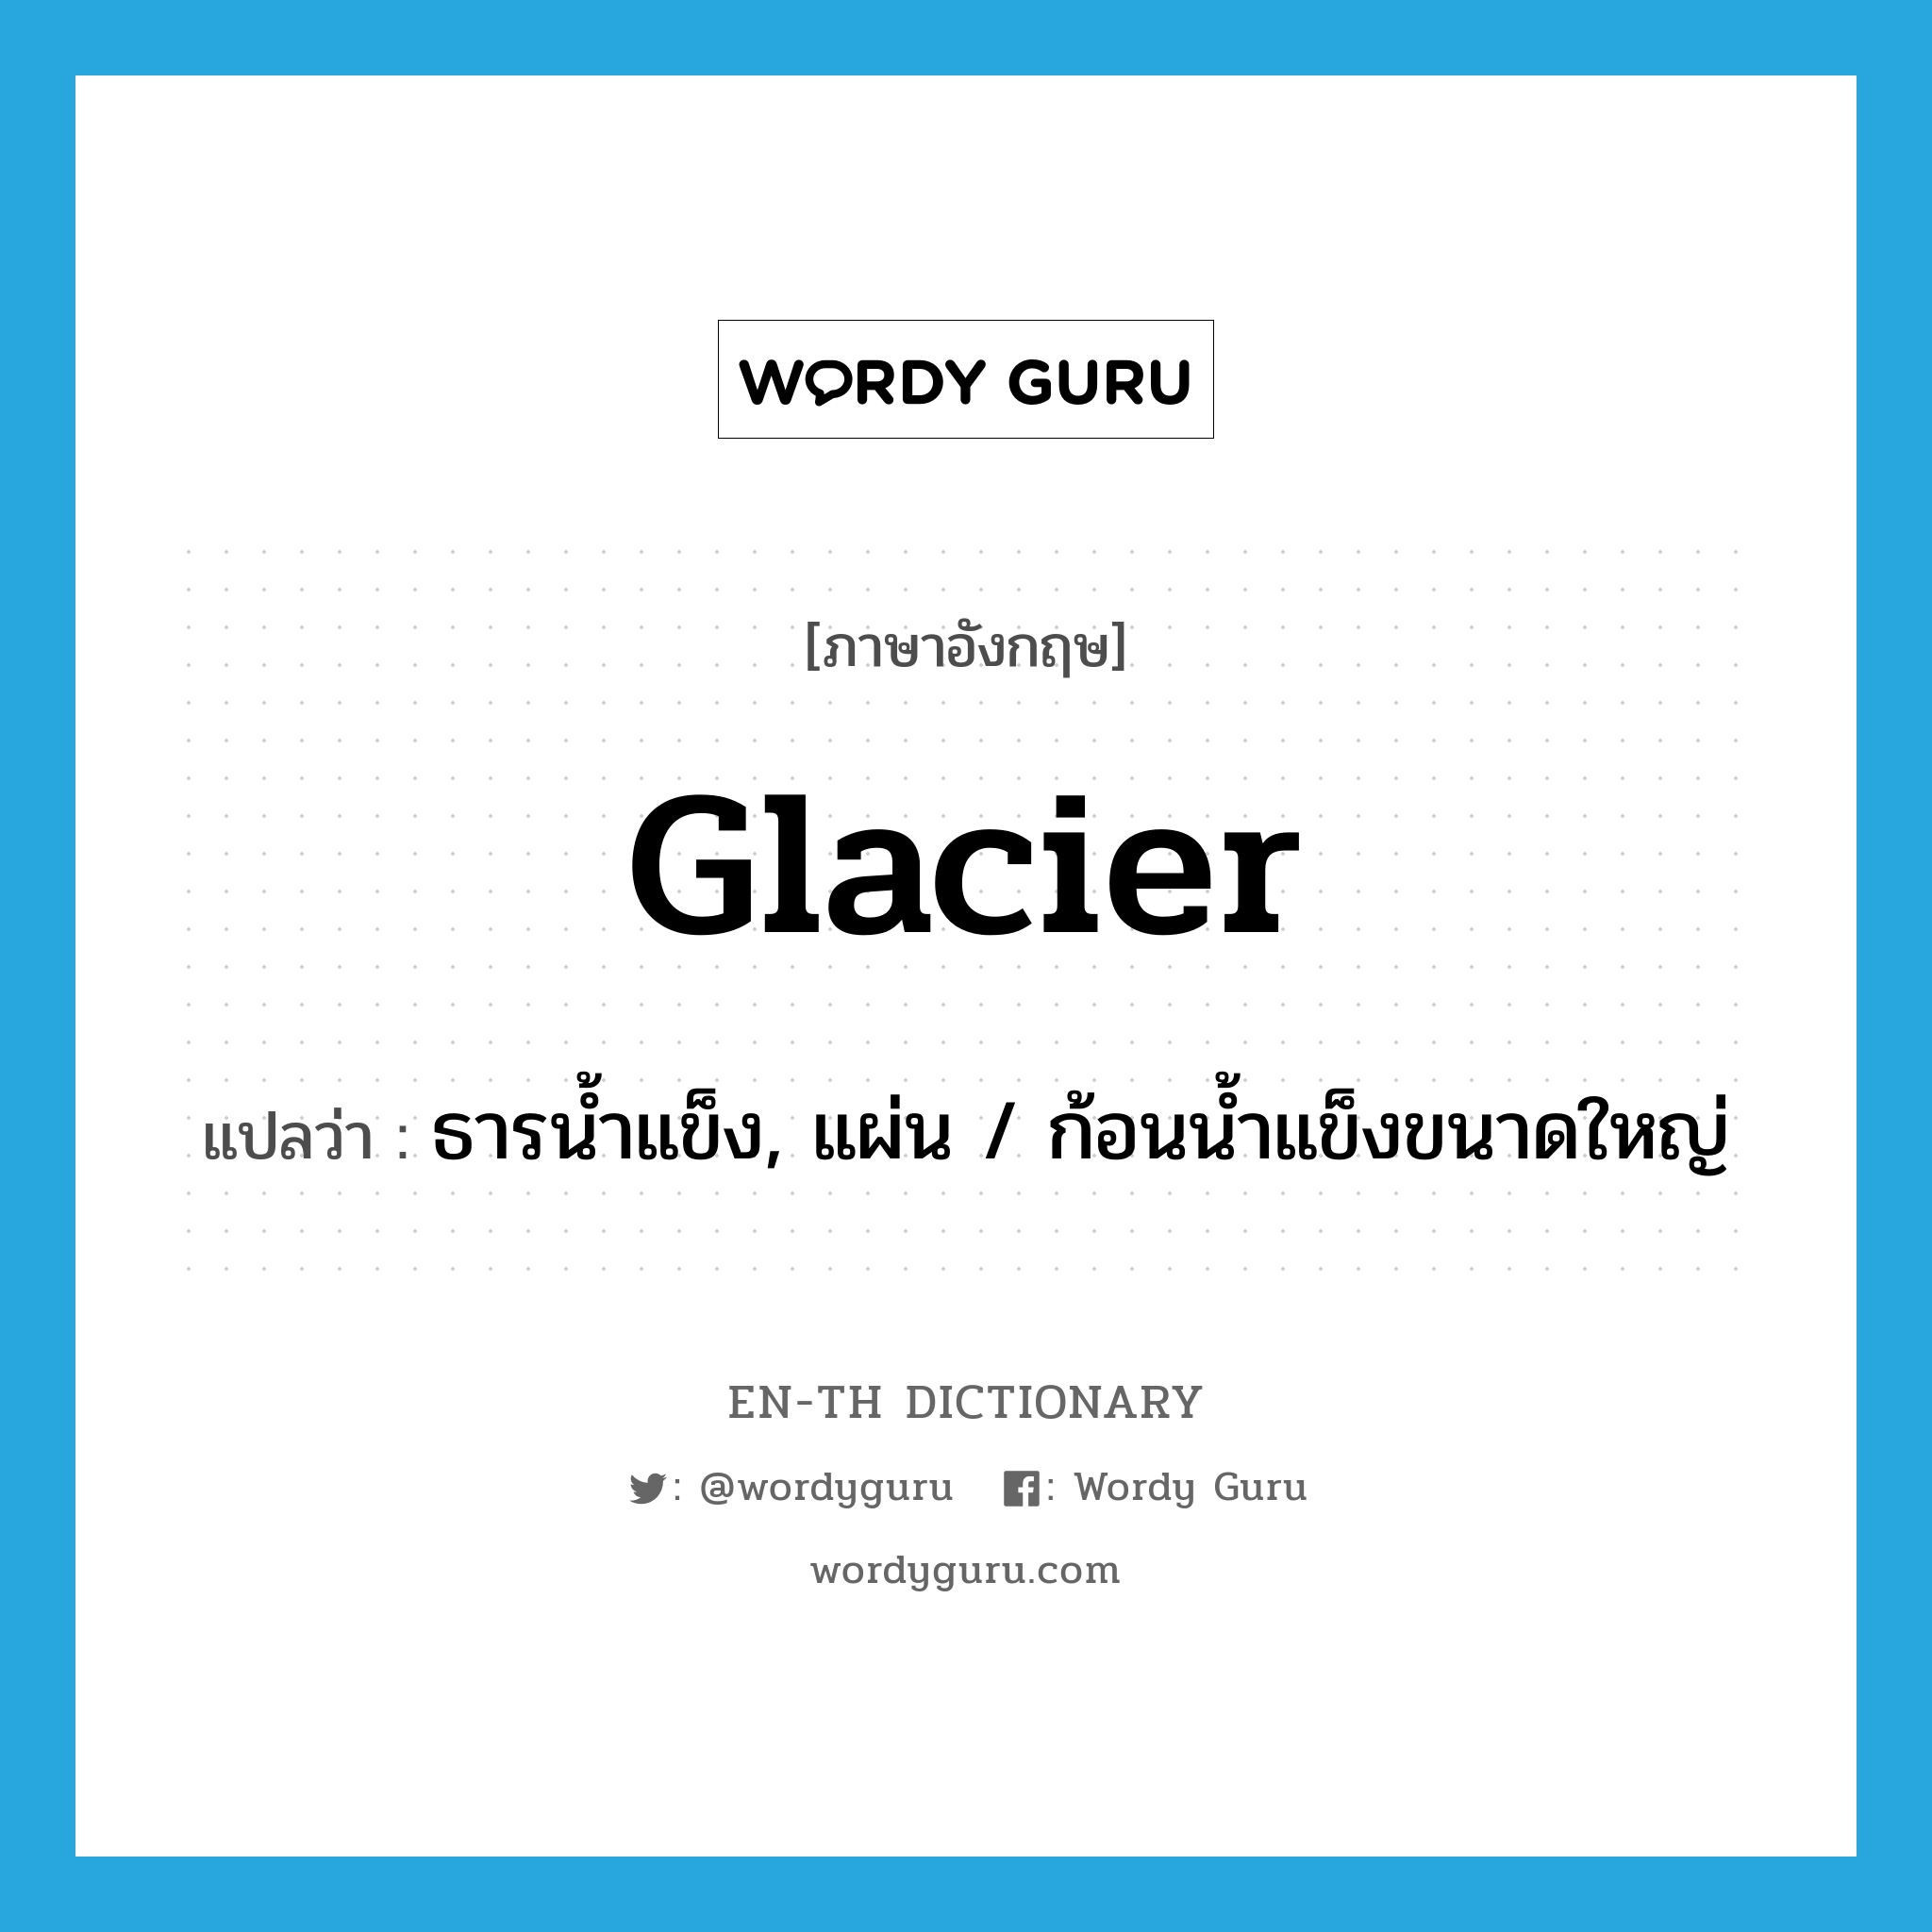 glacier แปลว่า?, คำศัพท์ภาษาอังกฤษ glacier แปลว่า ธารน้ำแข็ง, แผ่น / ก้อนน้ำแข็งขนาดใหญ่ ประเภท N หมวด N